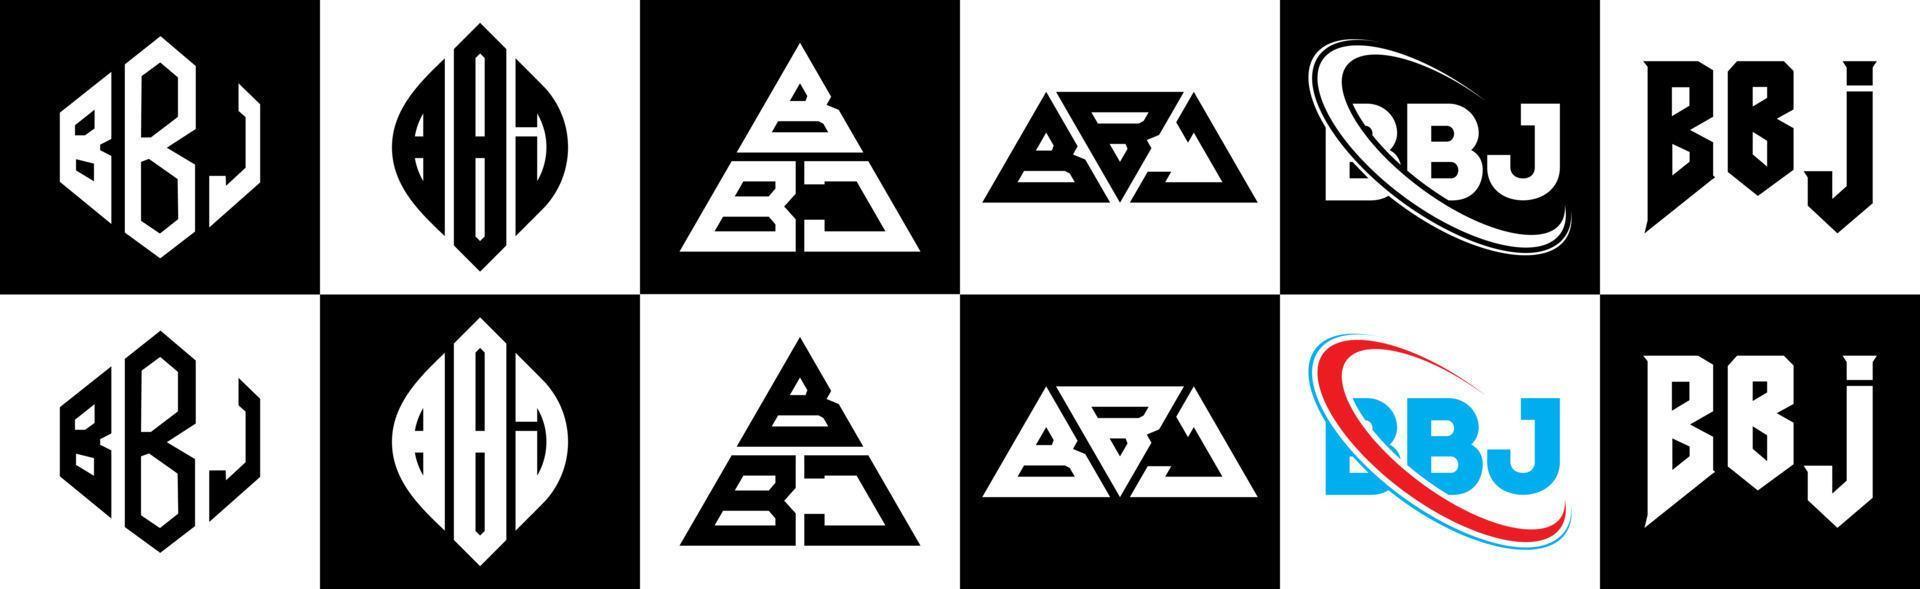 bbj-Buchstaben-Logo-Design in sechs Stilen. bbj polygon, kreis, dreieck, hexagon, flacher und einfacher stil mit schwarz-weißem farbvariationsbuchstabenlogo in einer zeichenfläche. bbj minimalistisches und klassisches logo vektor